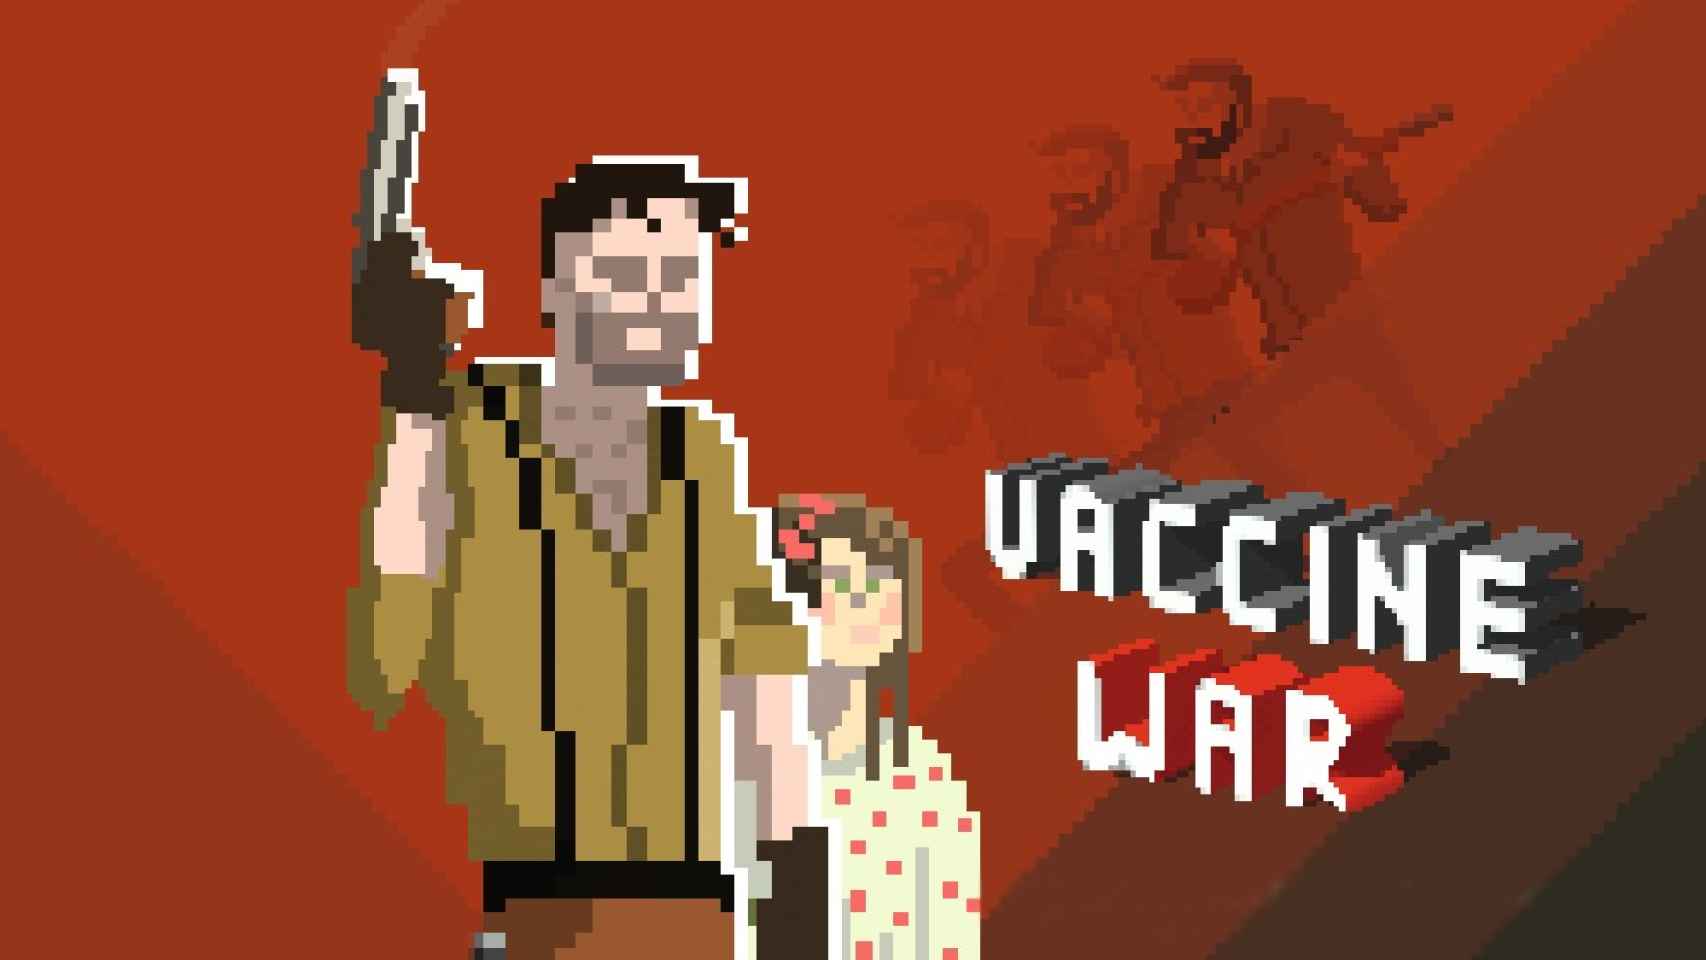 La Guerra Civil Española se traslada al videojuego con Vaccine War